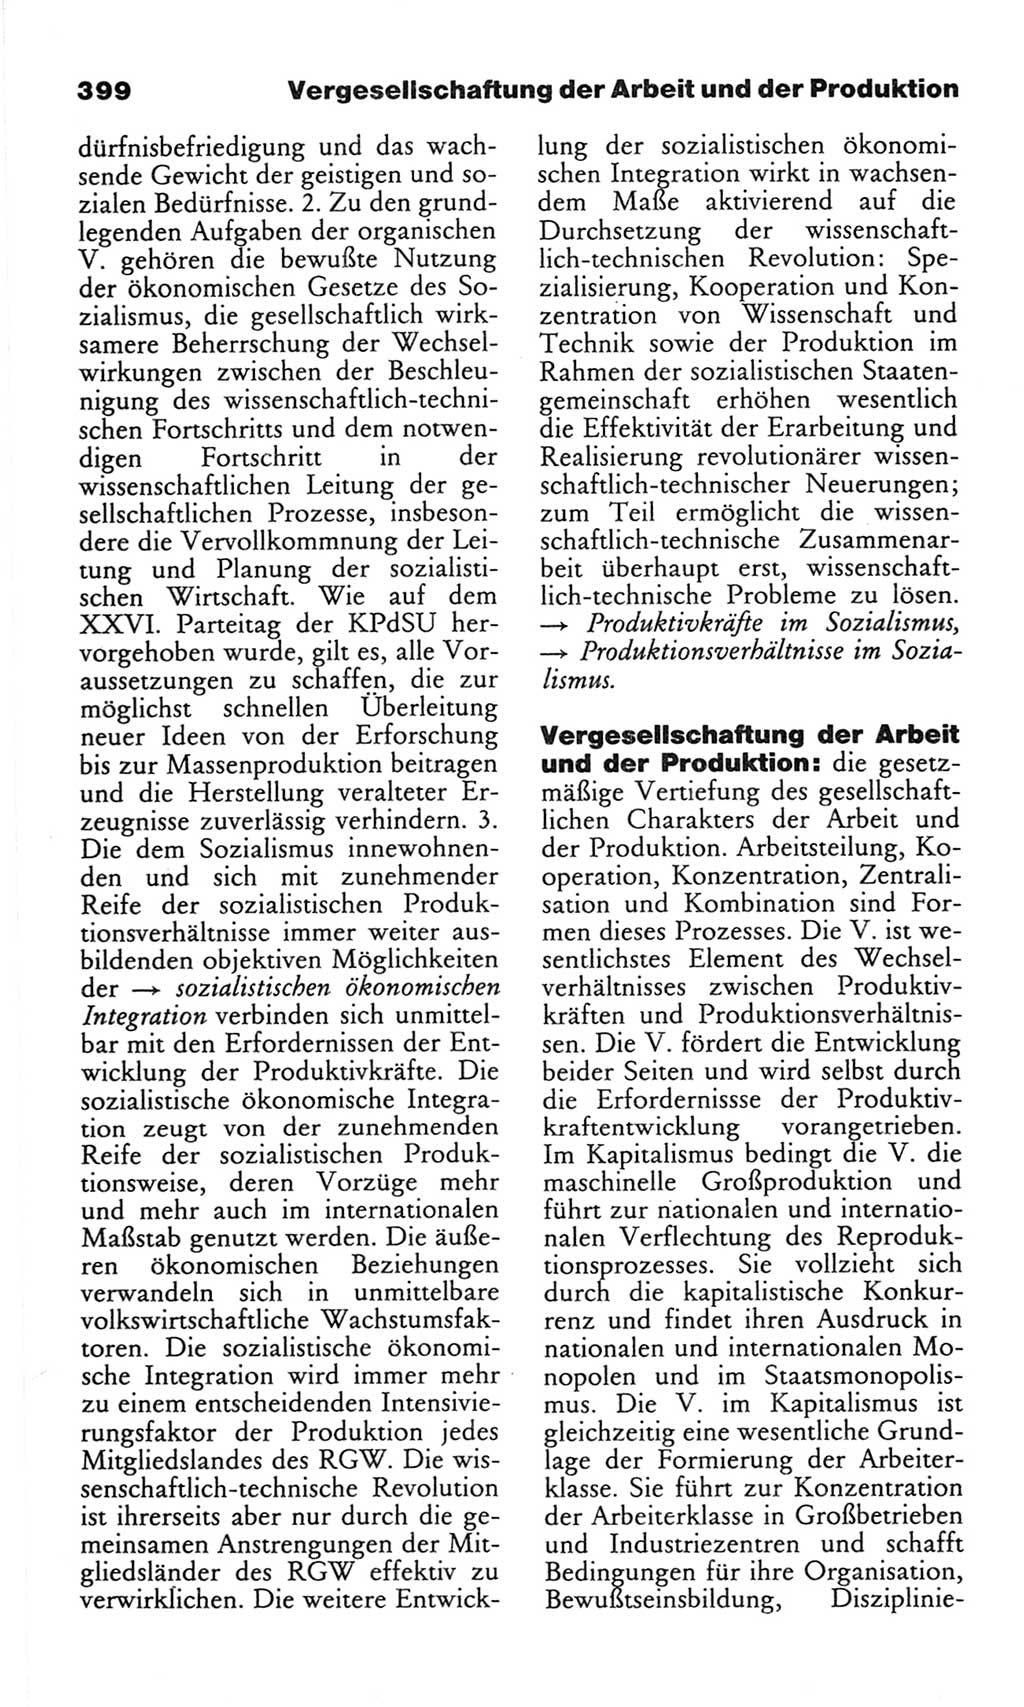 Wörterbuch des wissenschaftlichen Kommunismus [Deutsche Demokratische Republik (DDR)] 1982, Seite 399 (Wb. wiss. Komm. DDR 1982, S. 399)